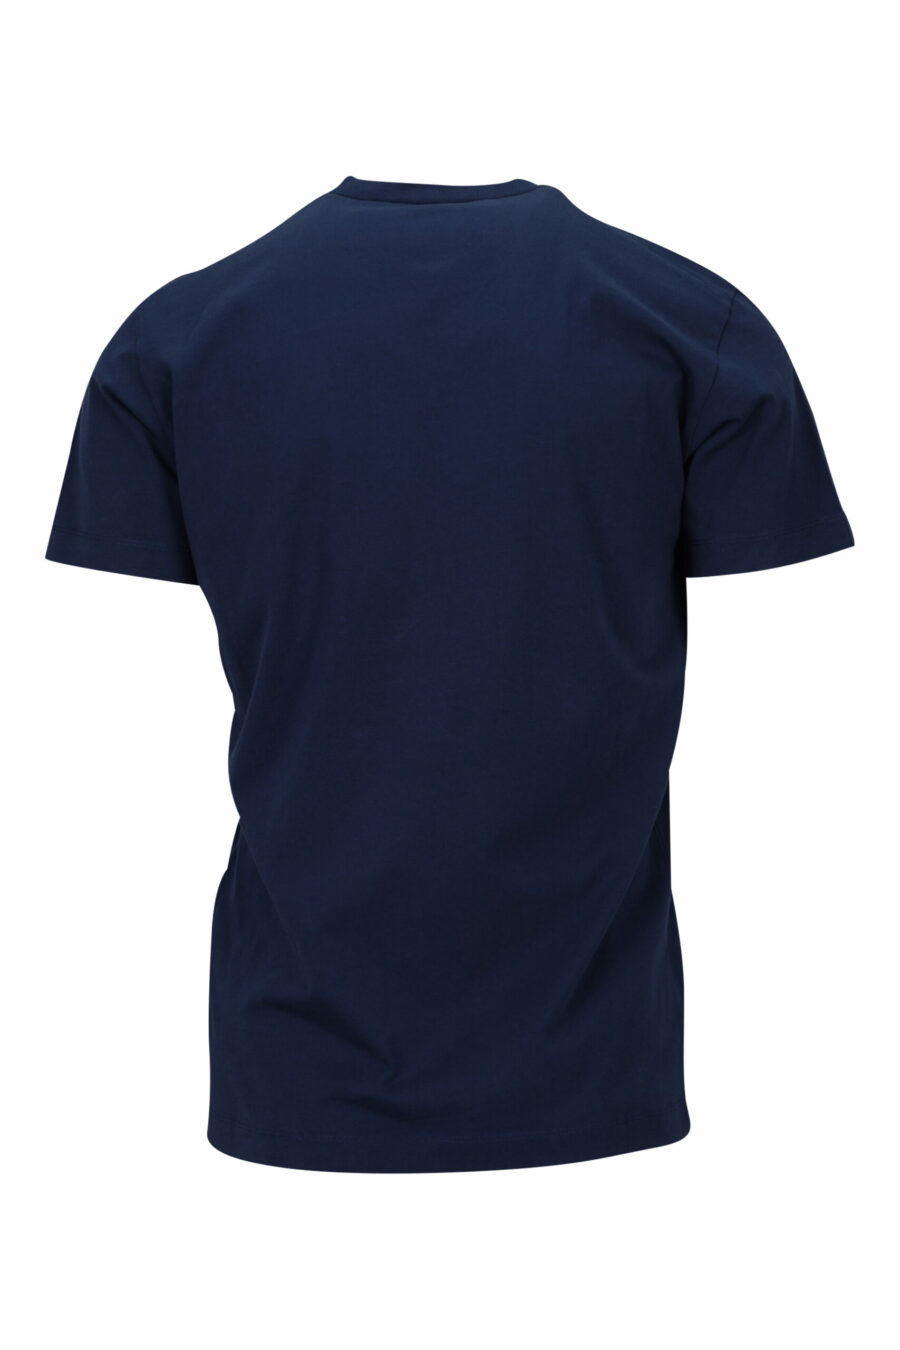 Camiseta azul oscura con minilogo "ceresio 9, milano" - 8054148505196 1 scaled